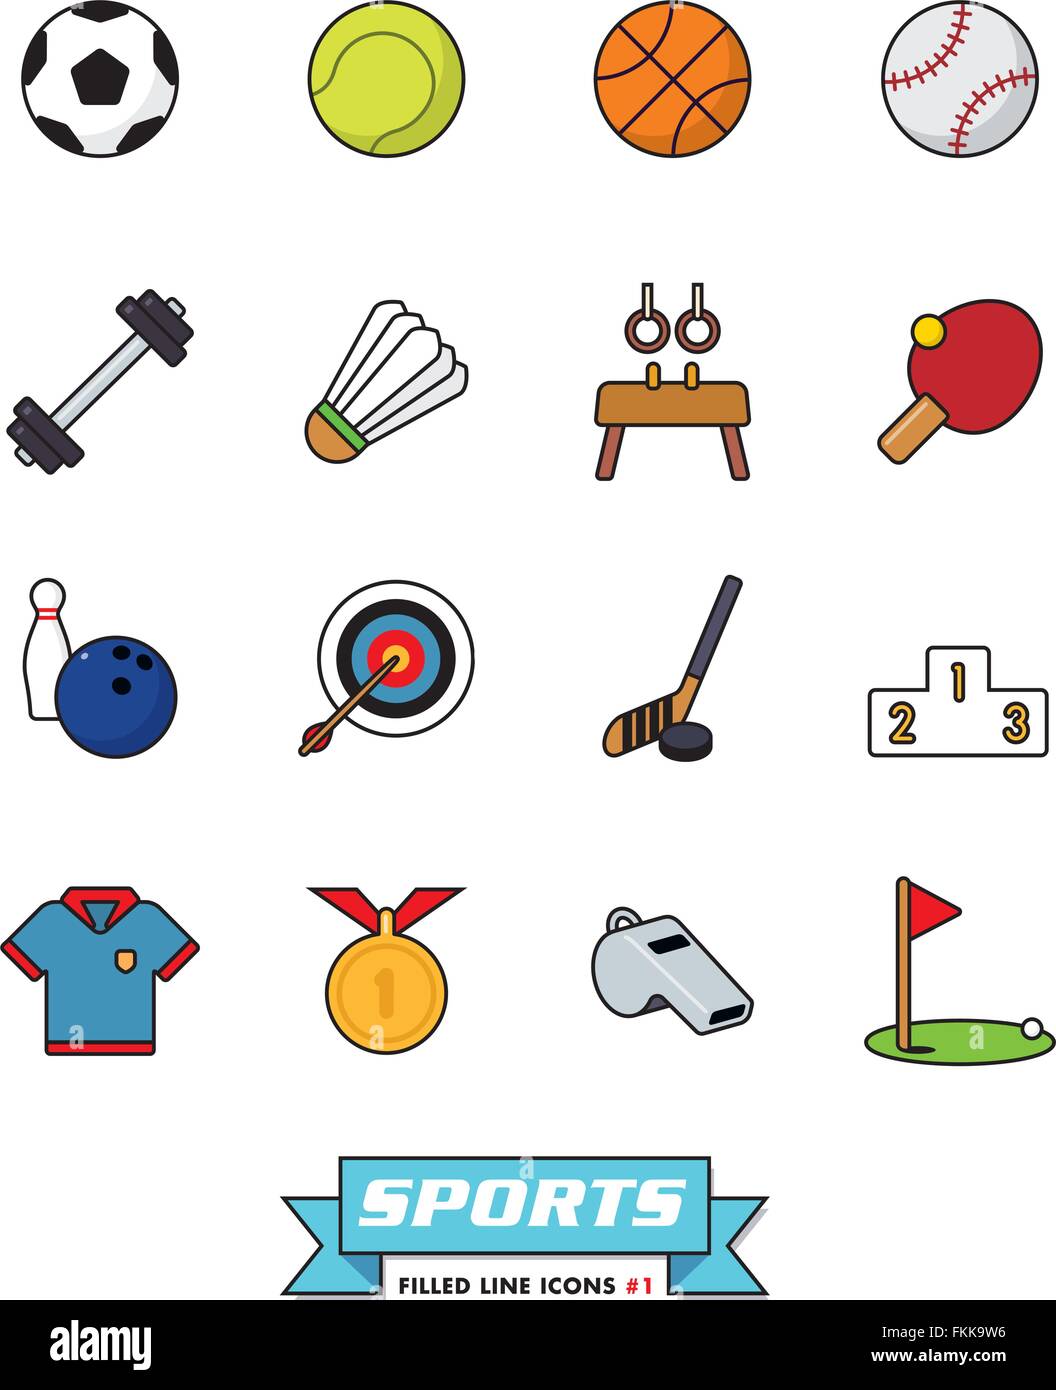 Sammlung von Sport gefüllt Linie Vektor-Icons auf weißem Hintergrund, Teil 1 Stock Vektor